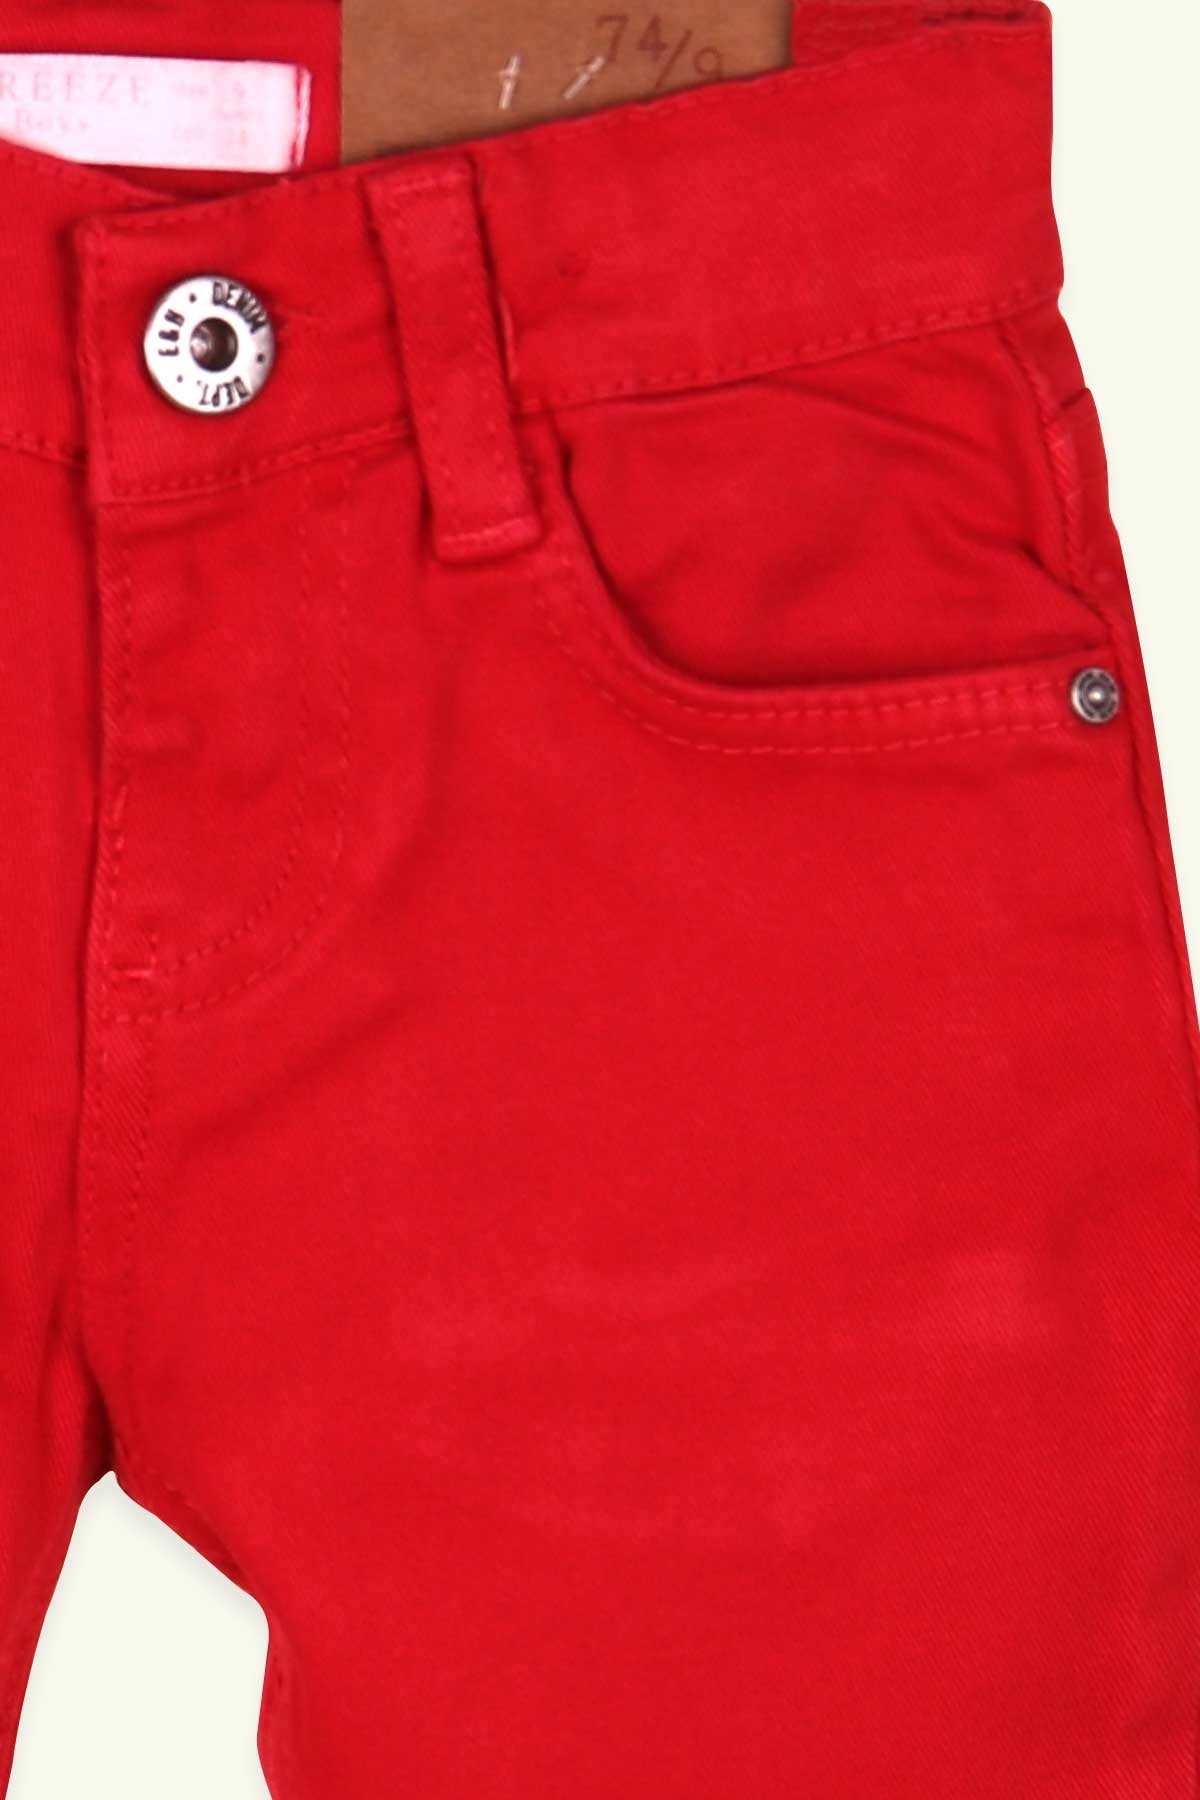 Erkek Çocuk Keten Pantolon Modeli Kırmızı 9 Ay - 6 Yaş